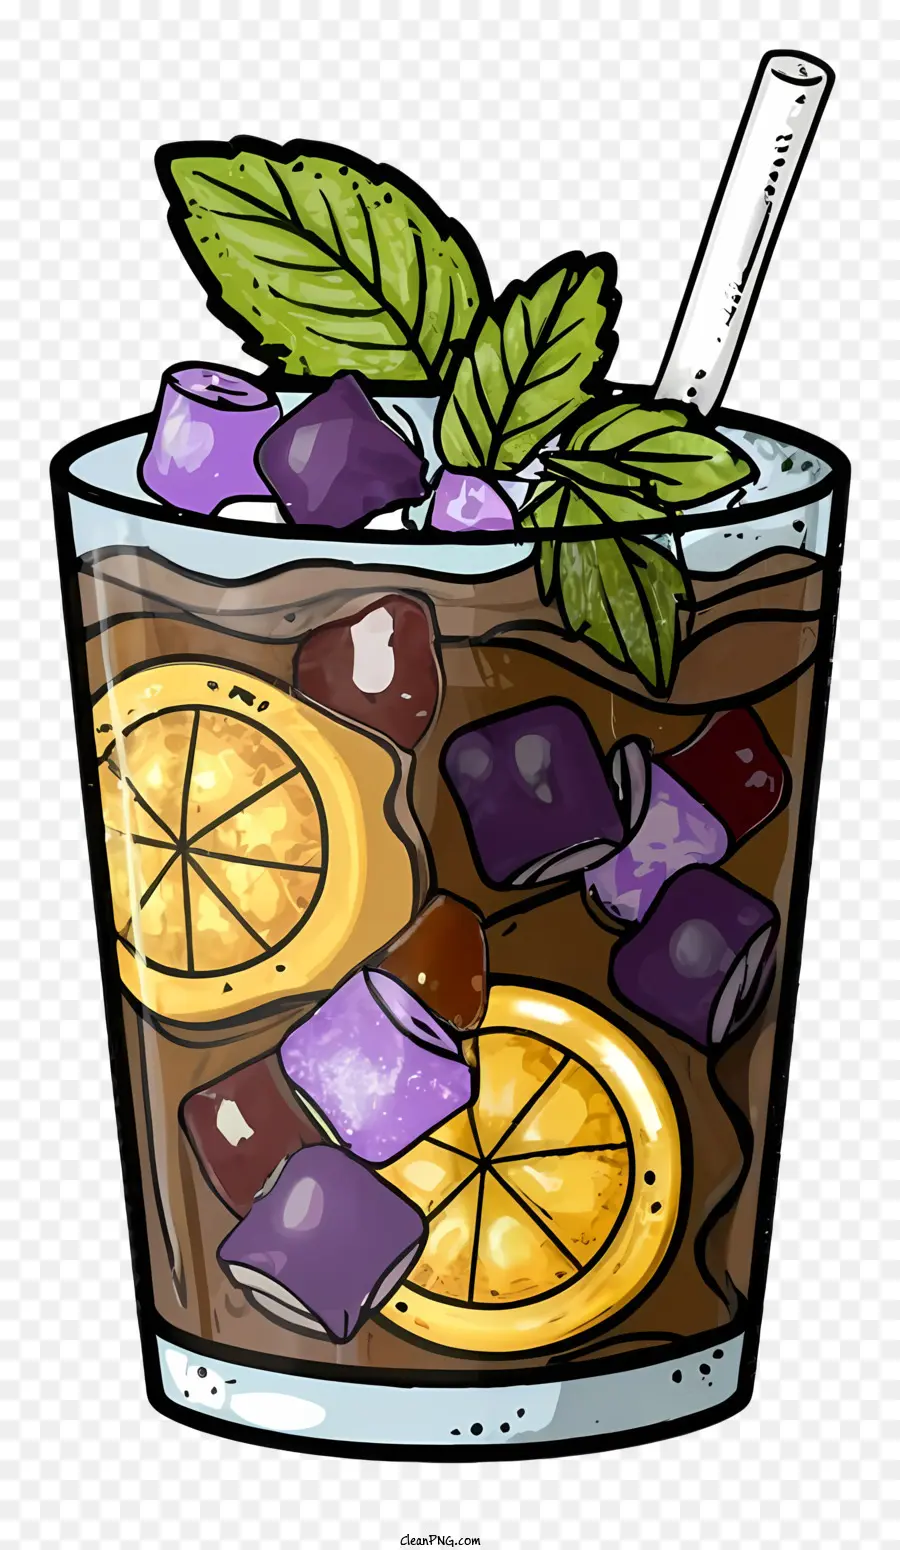 foglia di menta - Bicchiere pieno di bevanda alla frutta, foglia di menta, paglia